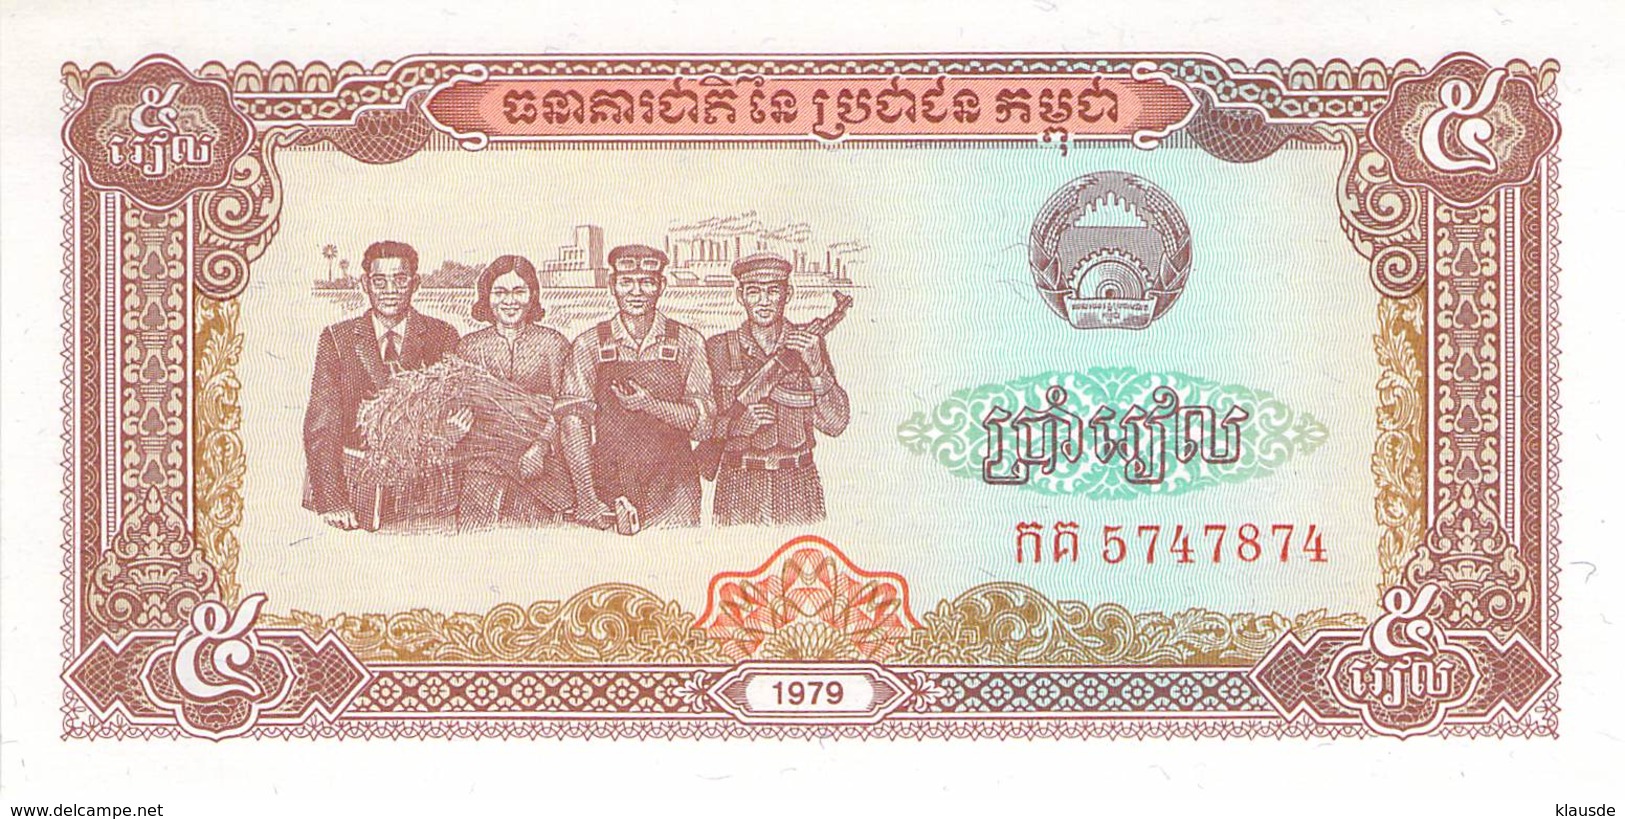 5 Riels Banknote Kambodscha - Kambodscha